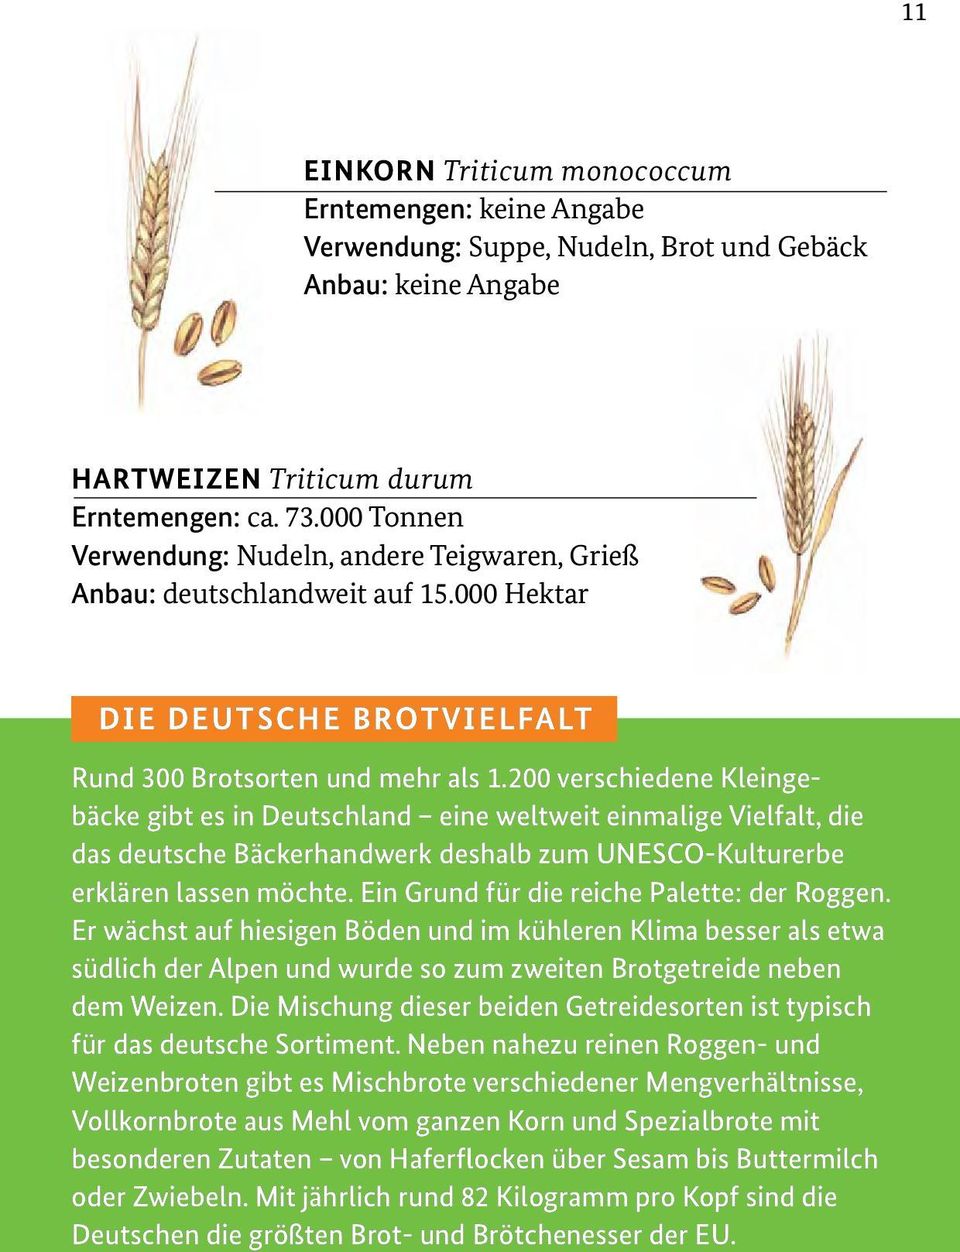 200 verschiedene Kleingebäcke gibt es in Deutschland eine weltweit einmalige Vielfalt, die das deutsche Bäckerhandwerk deshalb zum UNESCO-Kulturerbe erklären lassen möchte.